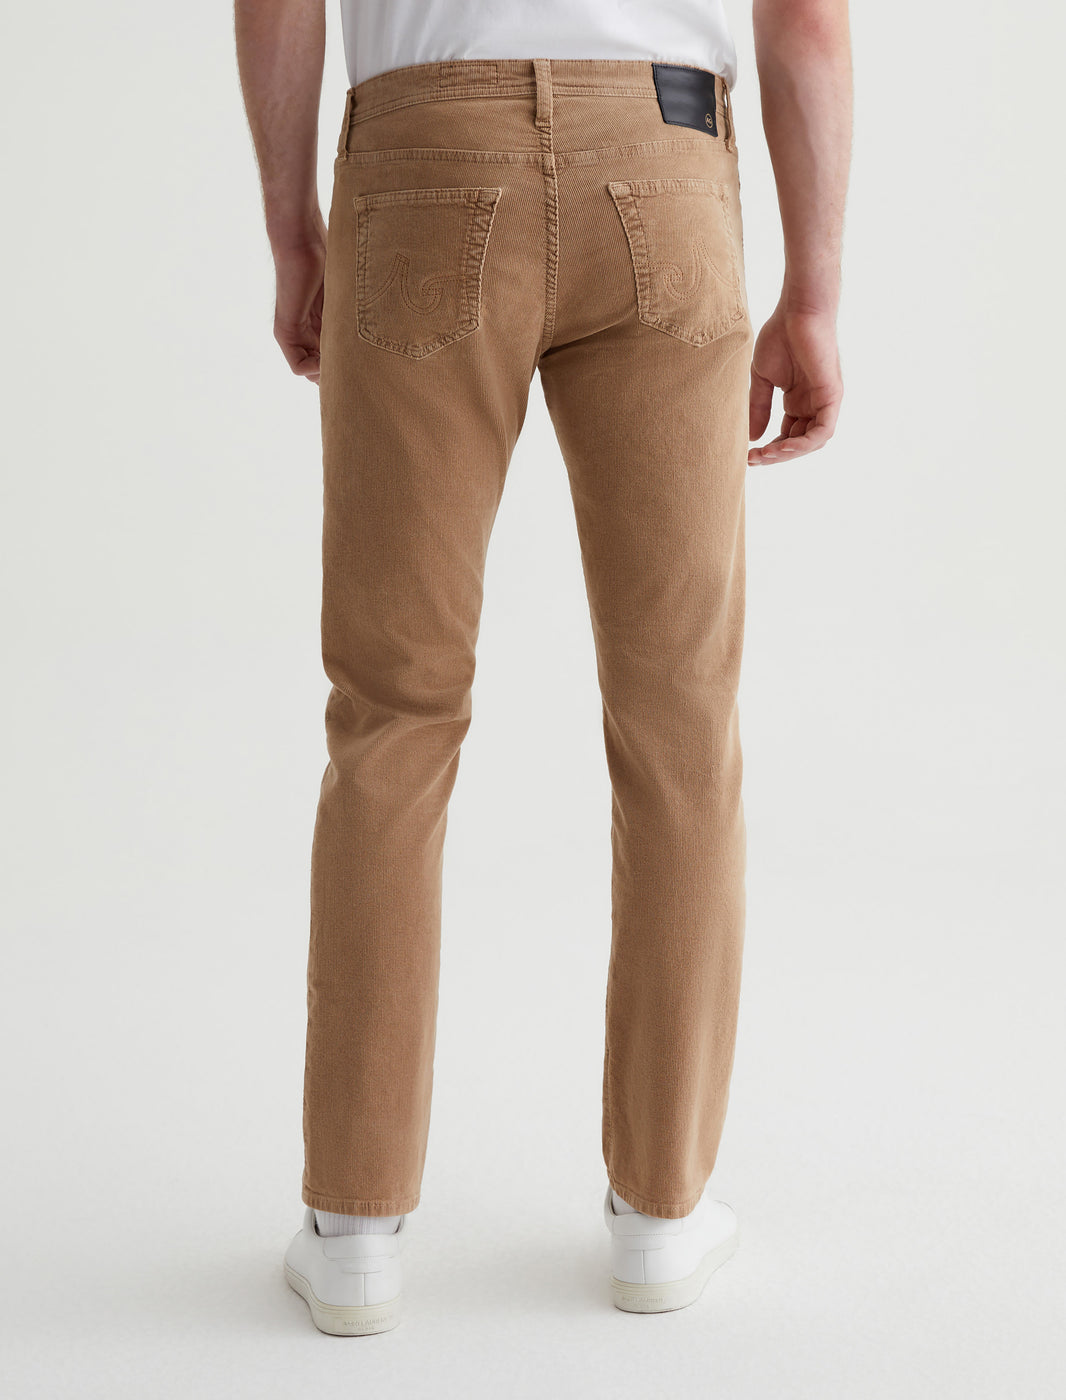 Slim Fit Corduroy Pants - Dark brown - Men